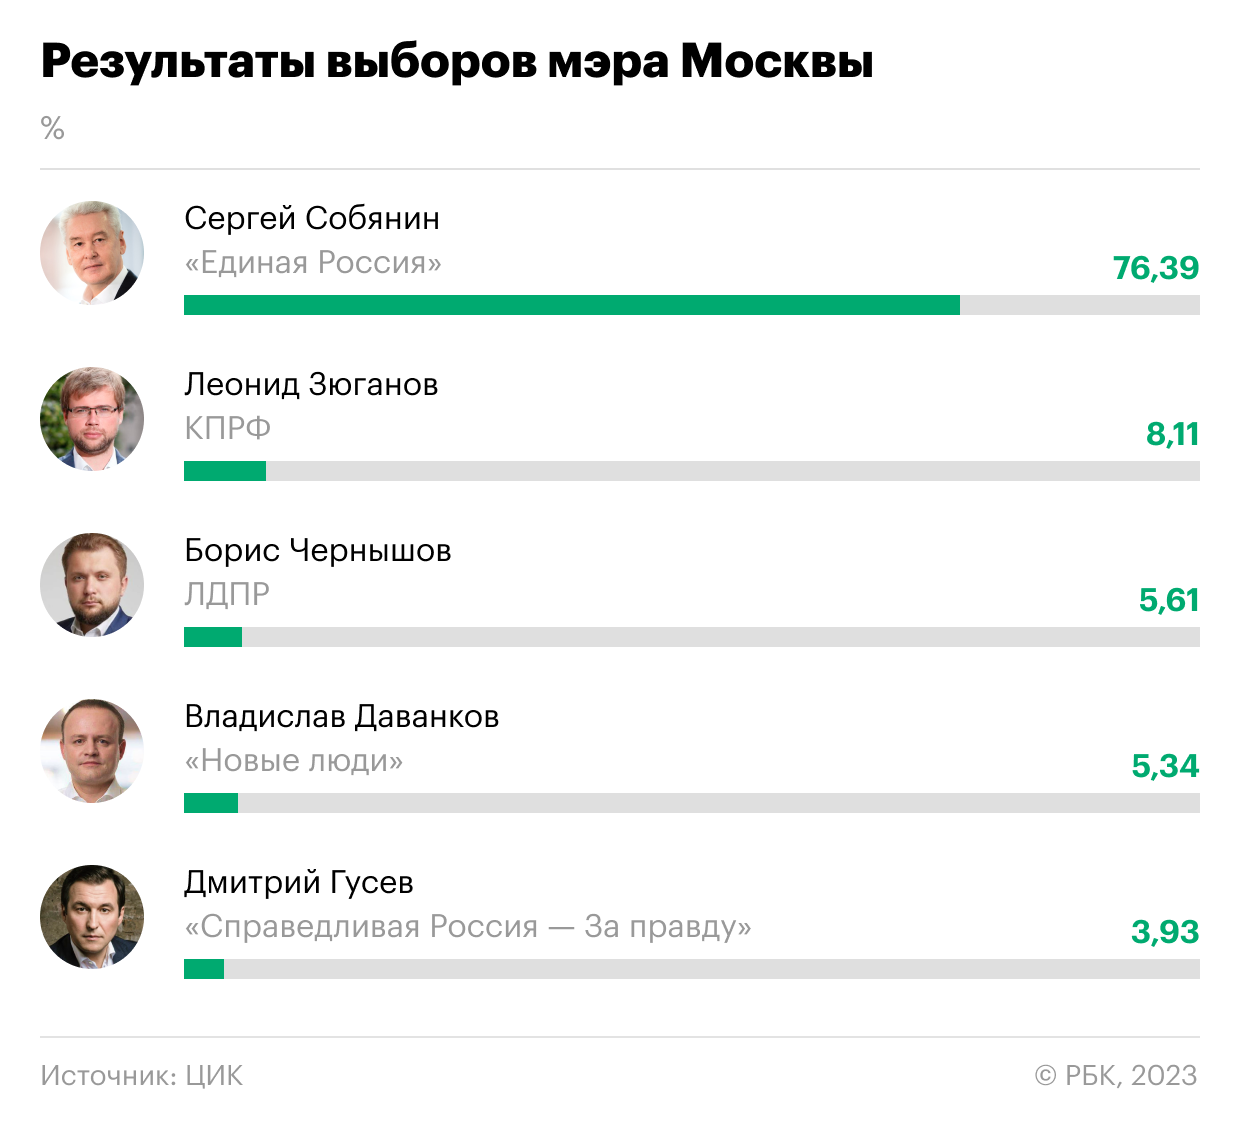 Какие выборы 2023 года в россии. Результаты выборов мэра Москвы 2023. Результпты авборов в Росси. Результаты выборов в Москве. Результаты выборы 2023.